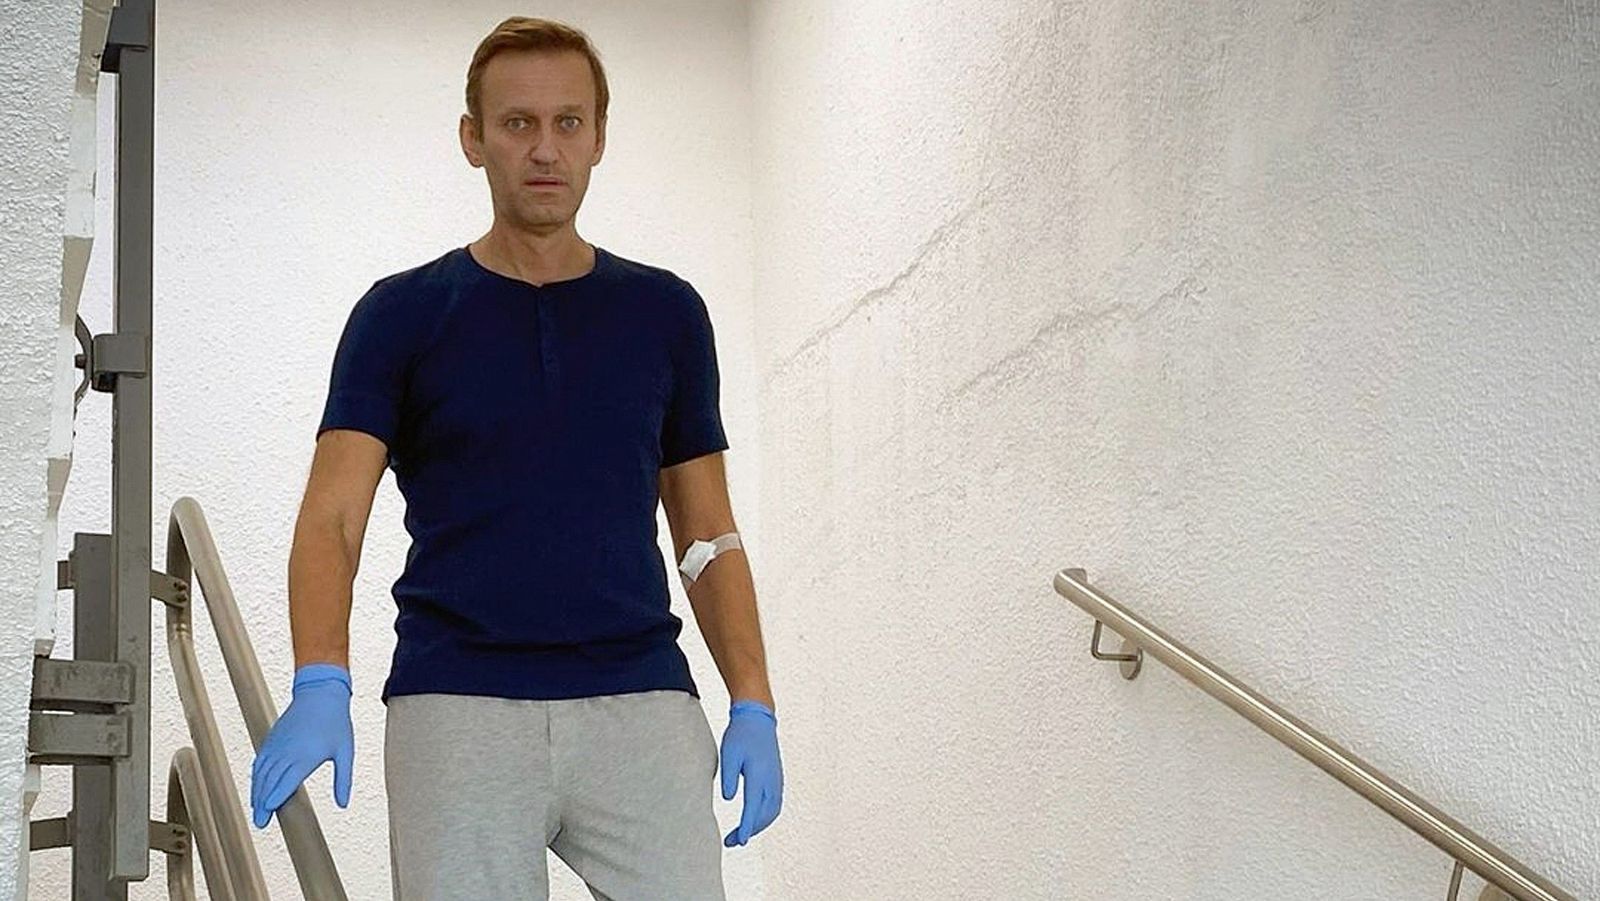 El opositor ruso Navalny recibe el alta hospitalaria - RTVE.es